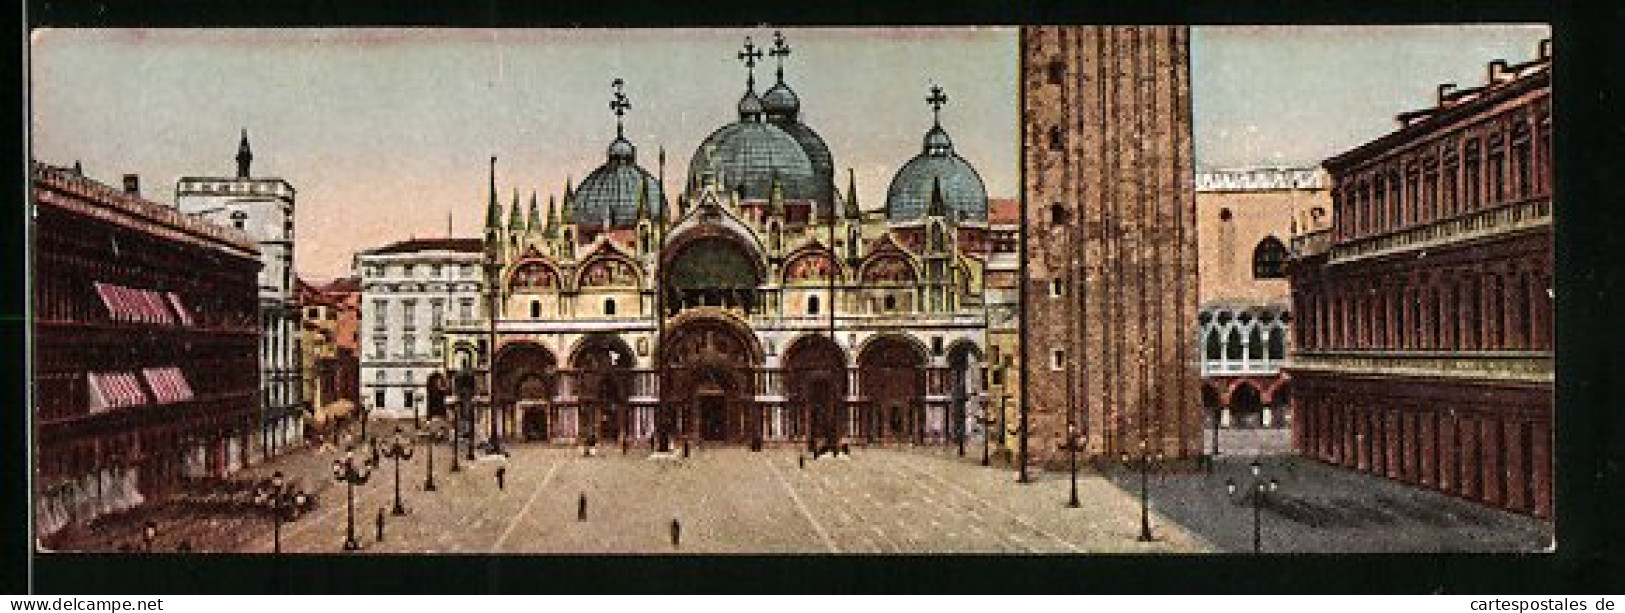 Mini-Cartolina Venezia, Basilica S. Marco  - Venezia (Venedig)